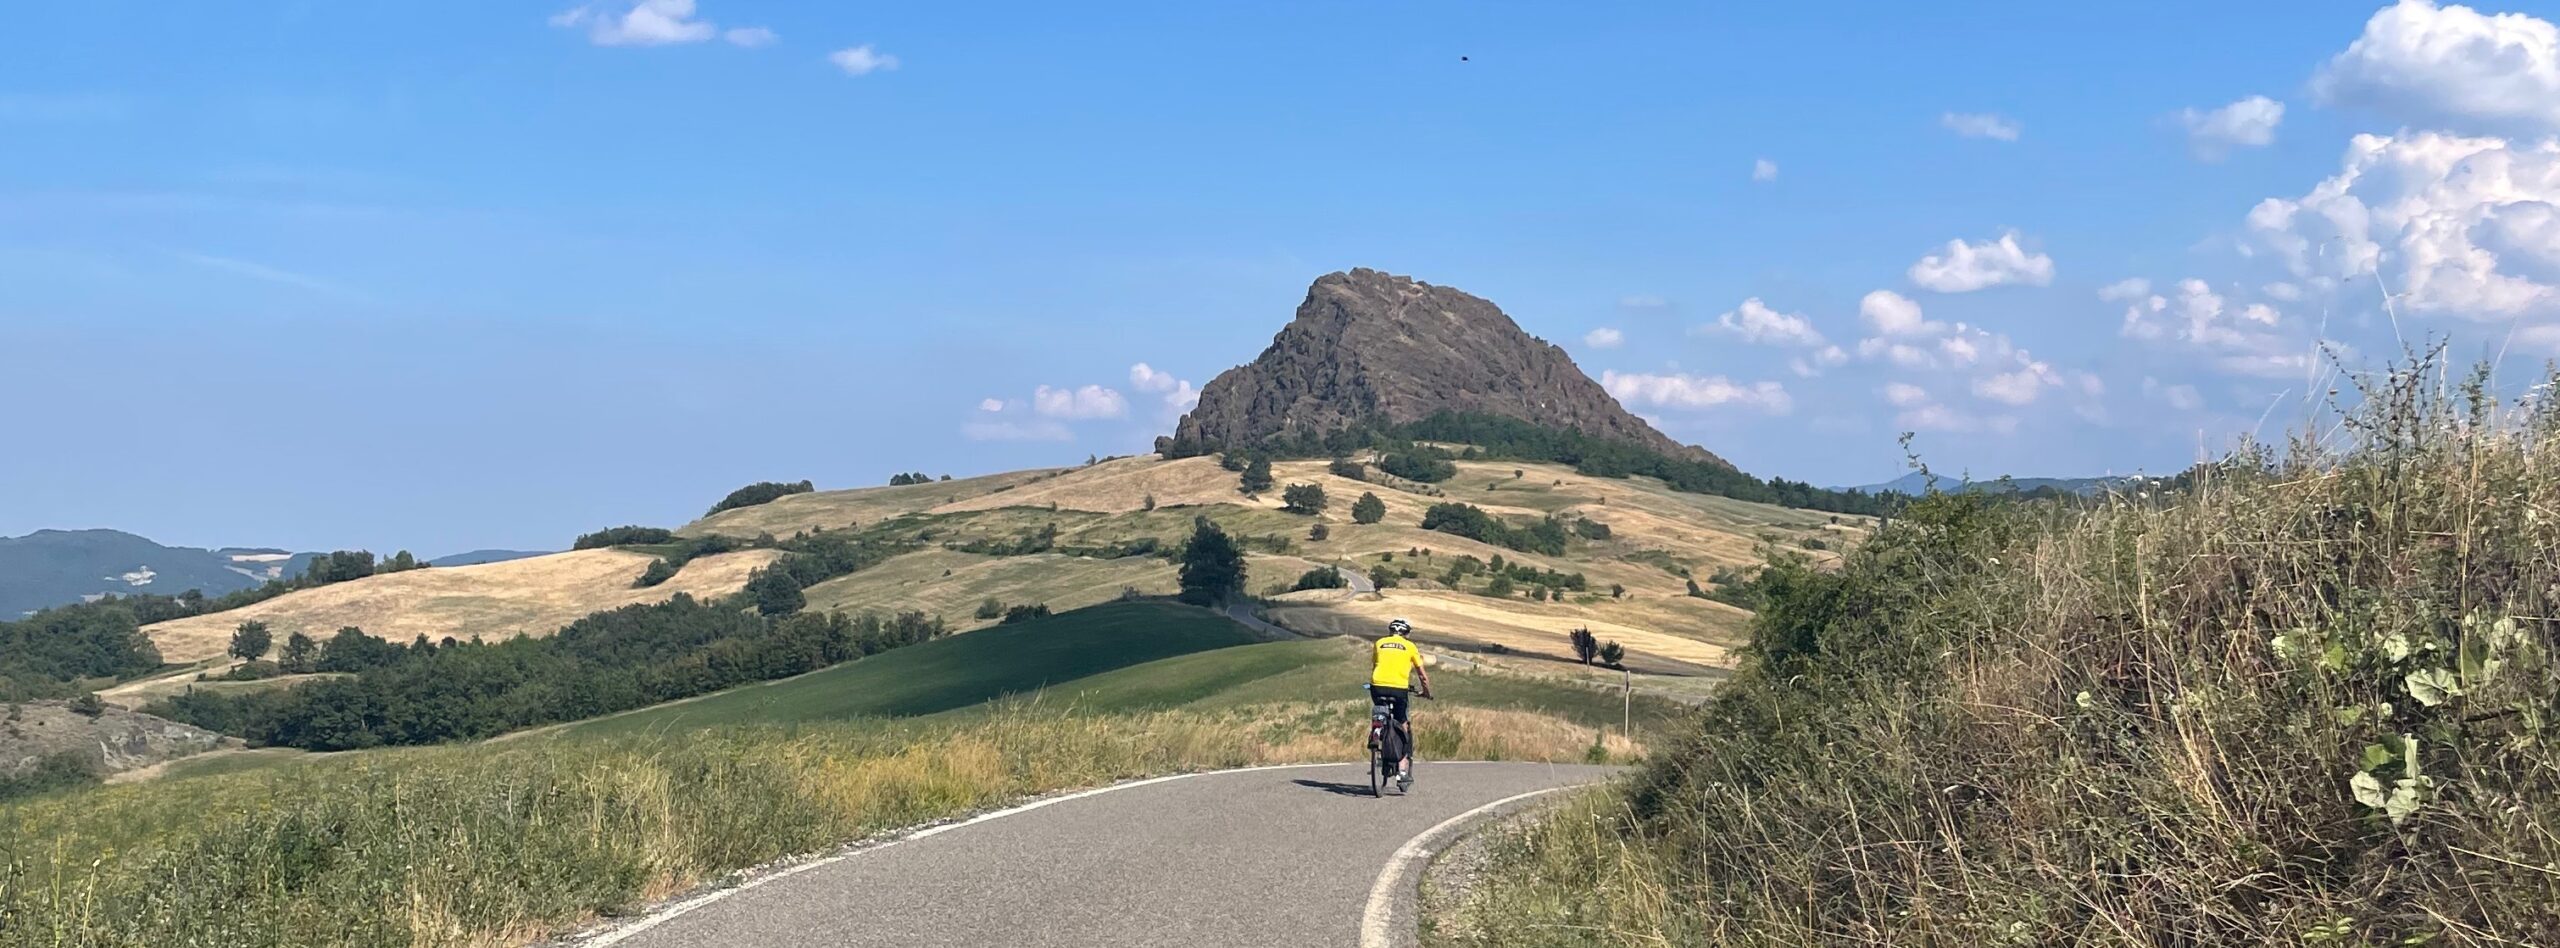 Fietser in glooiend landschap in Emilia Romagna Italië met op achtergrond rots Pietra Parcellara